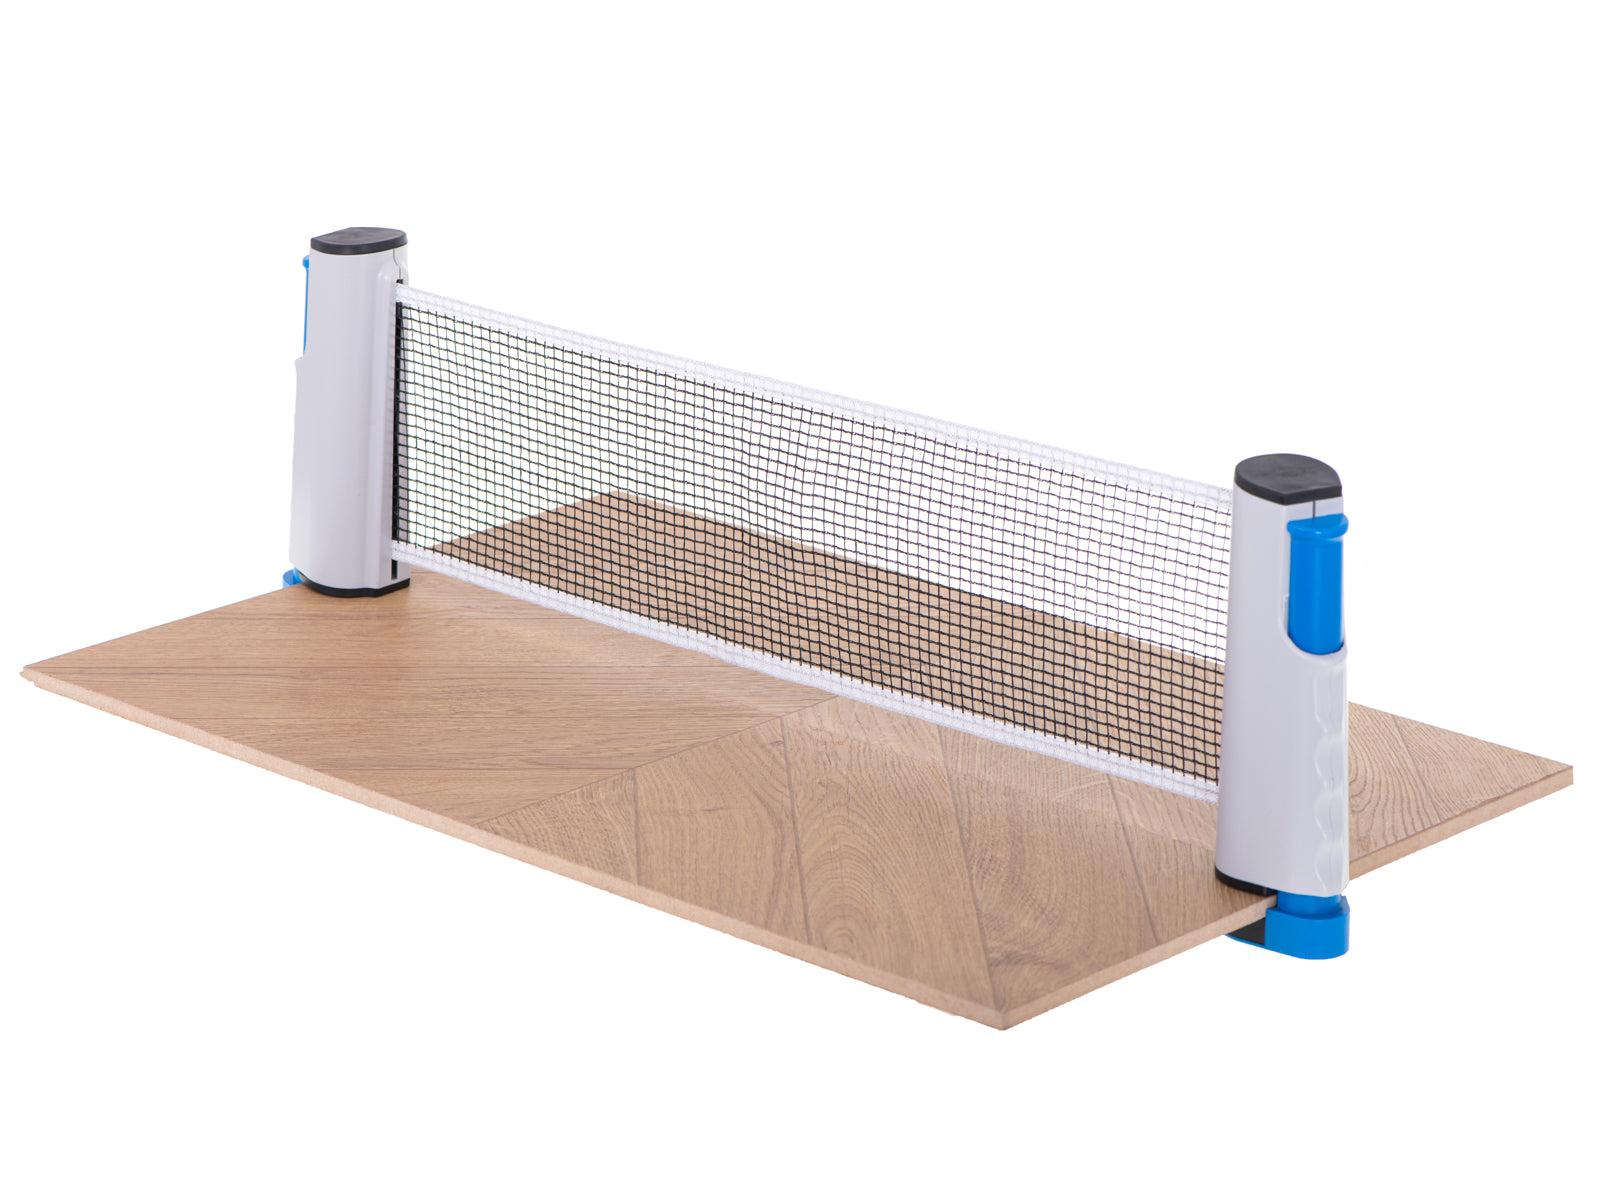 Galda tenisa galda tenisa pingponga tīkls paletes raketes